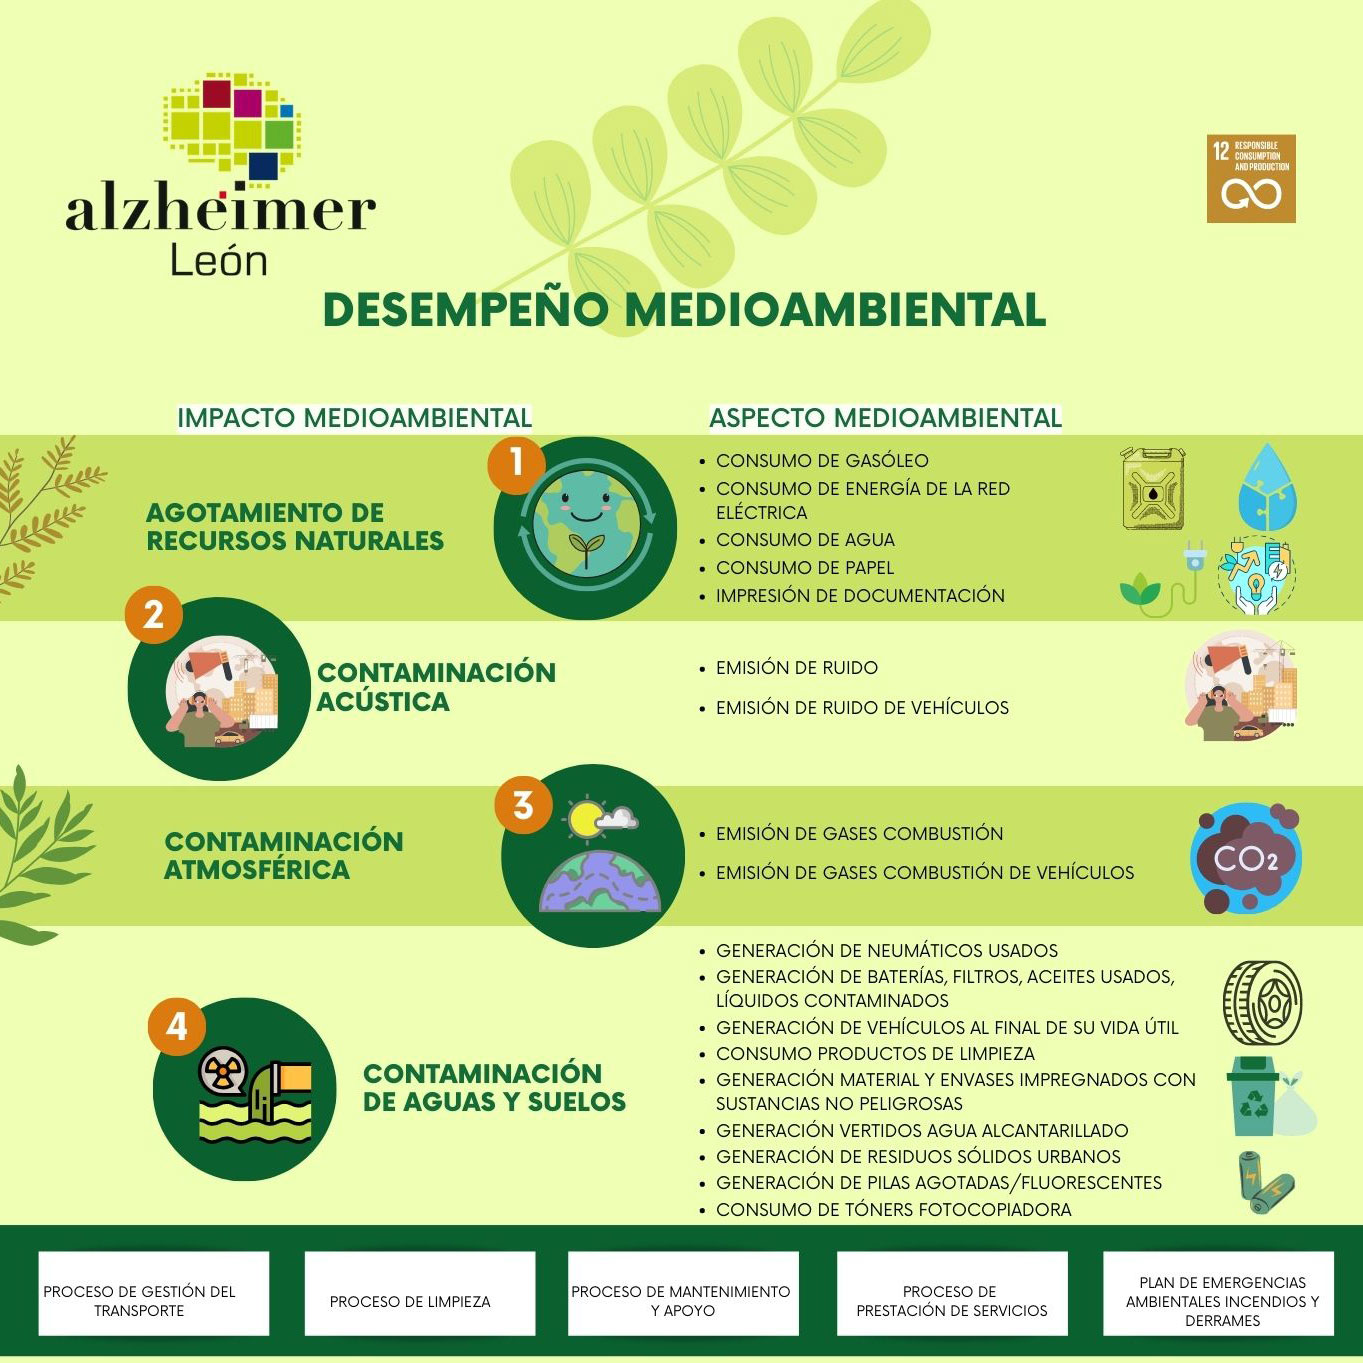 infografía desempeño medioambiental alzheimer leon